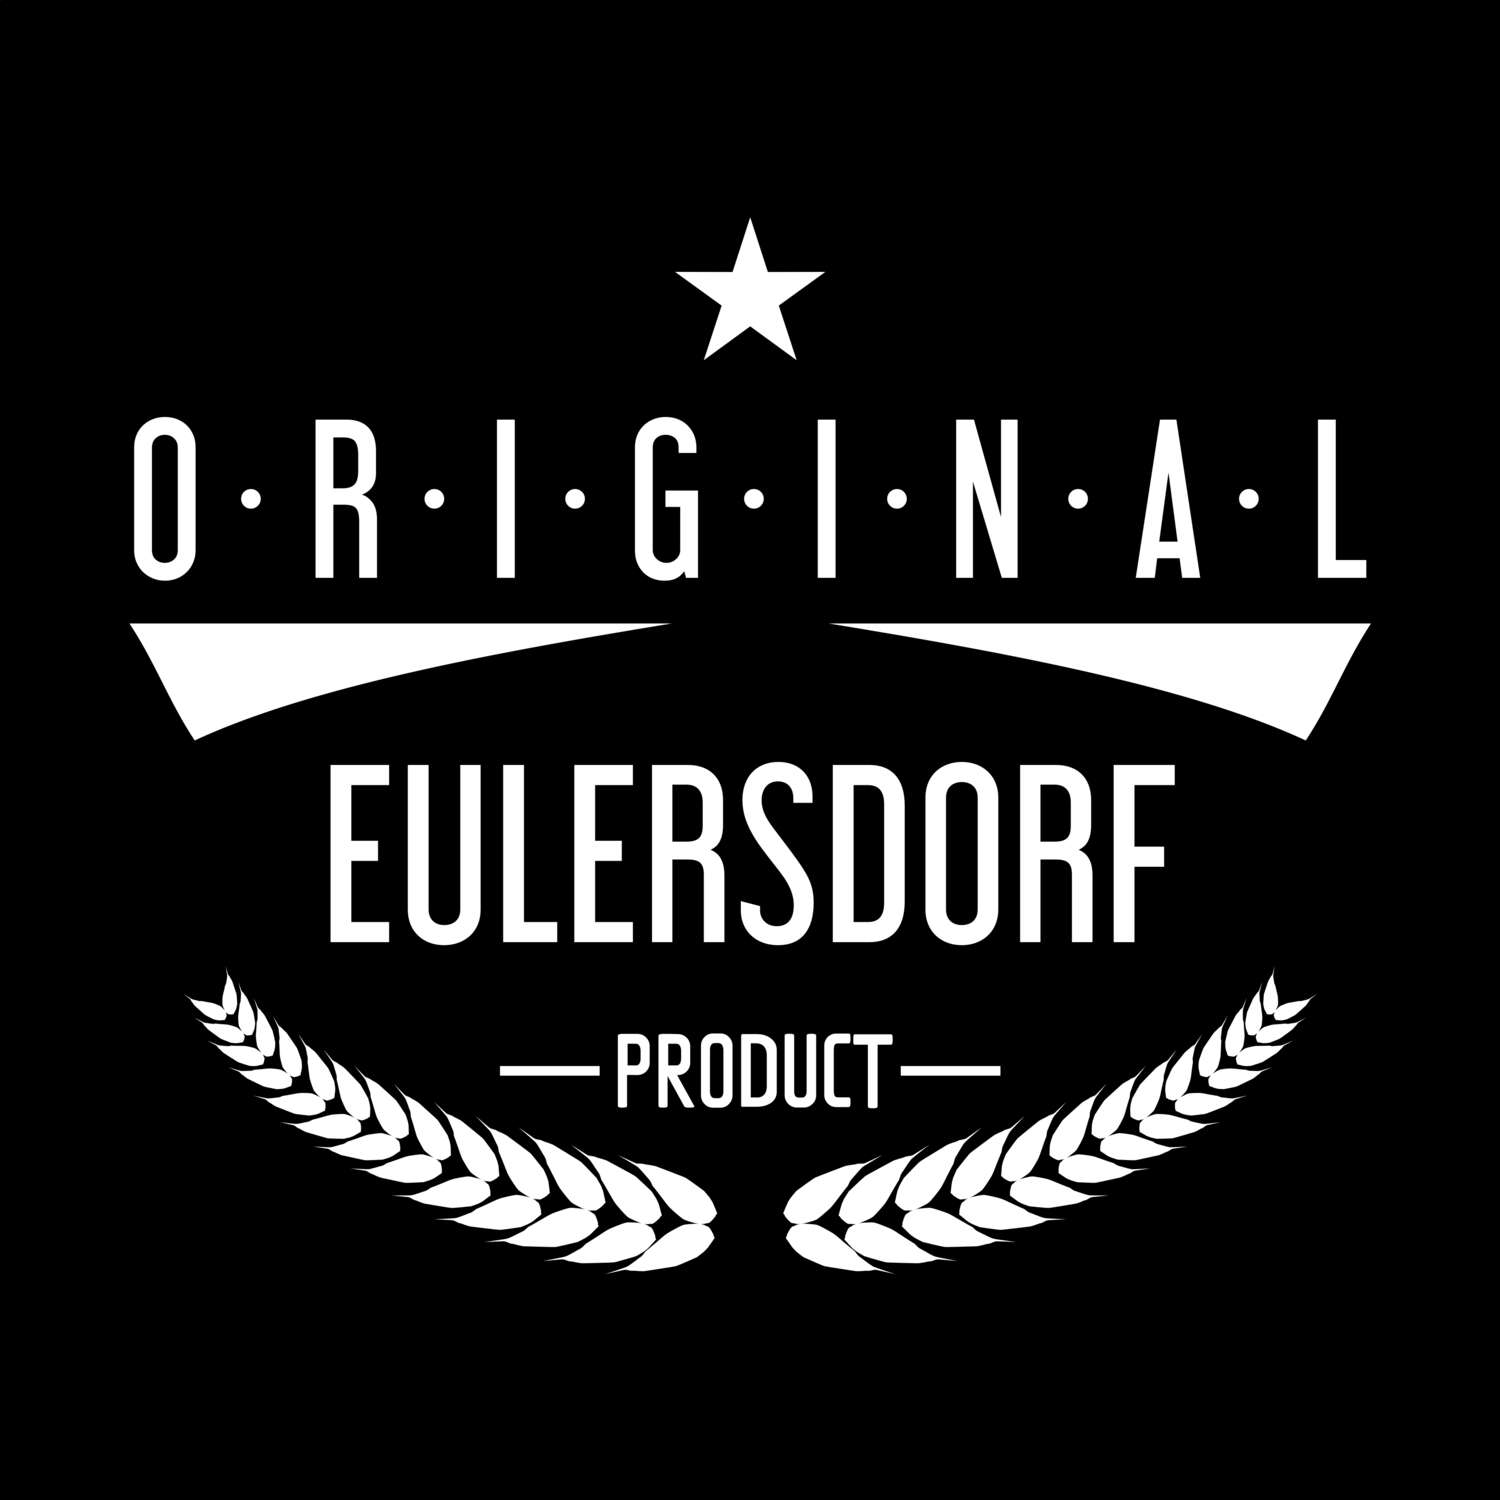 Eulersdorf T-Shirt »Original Product«